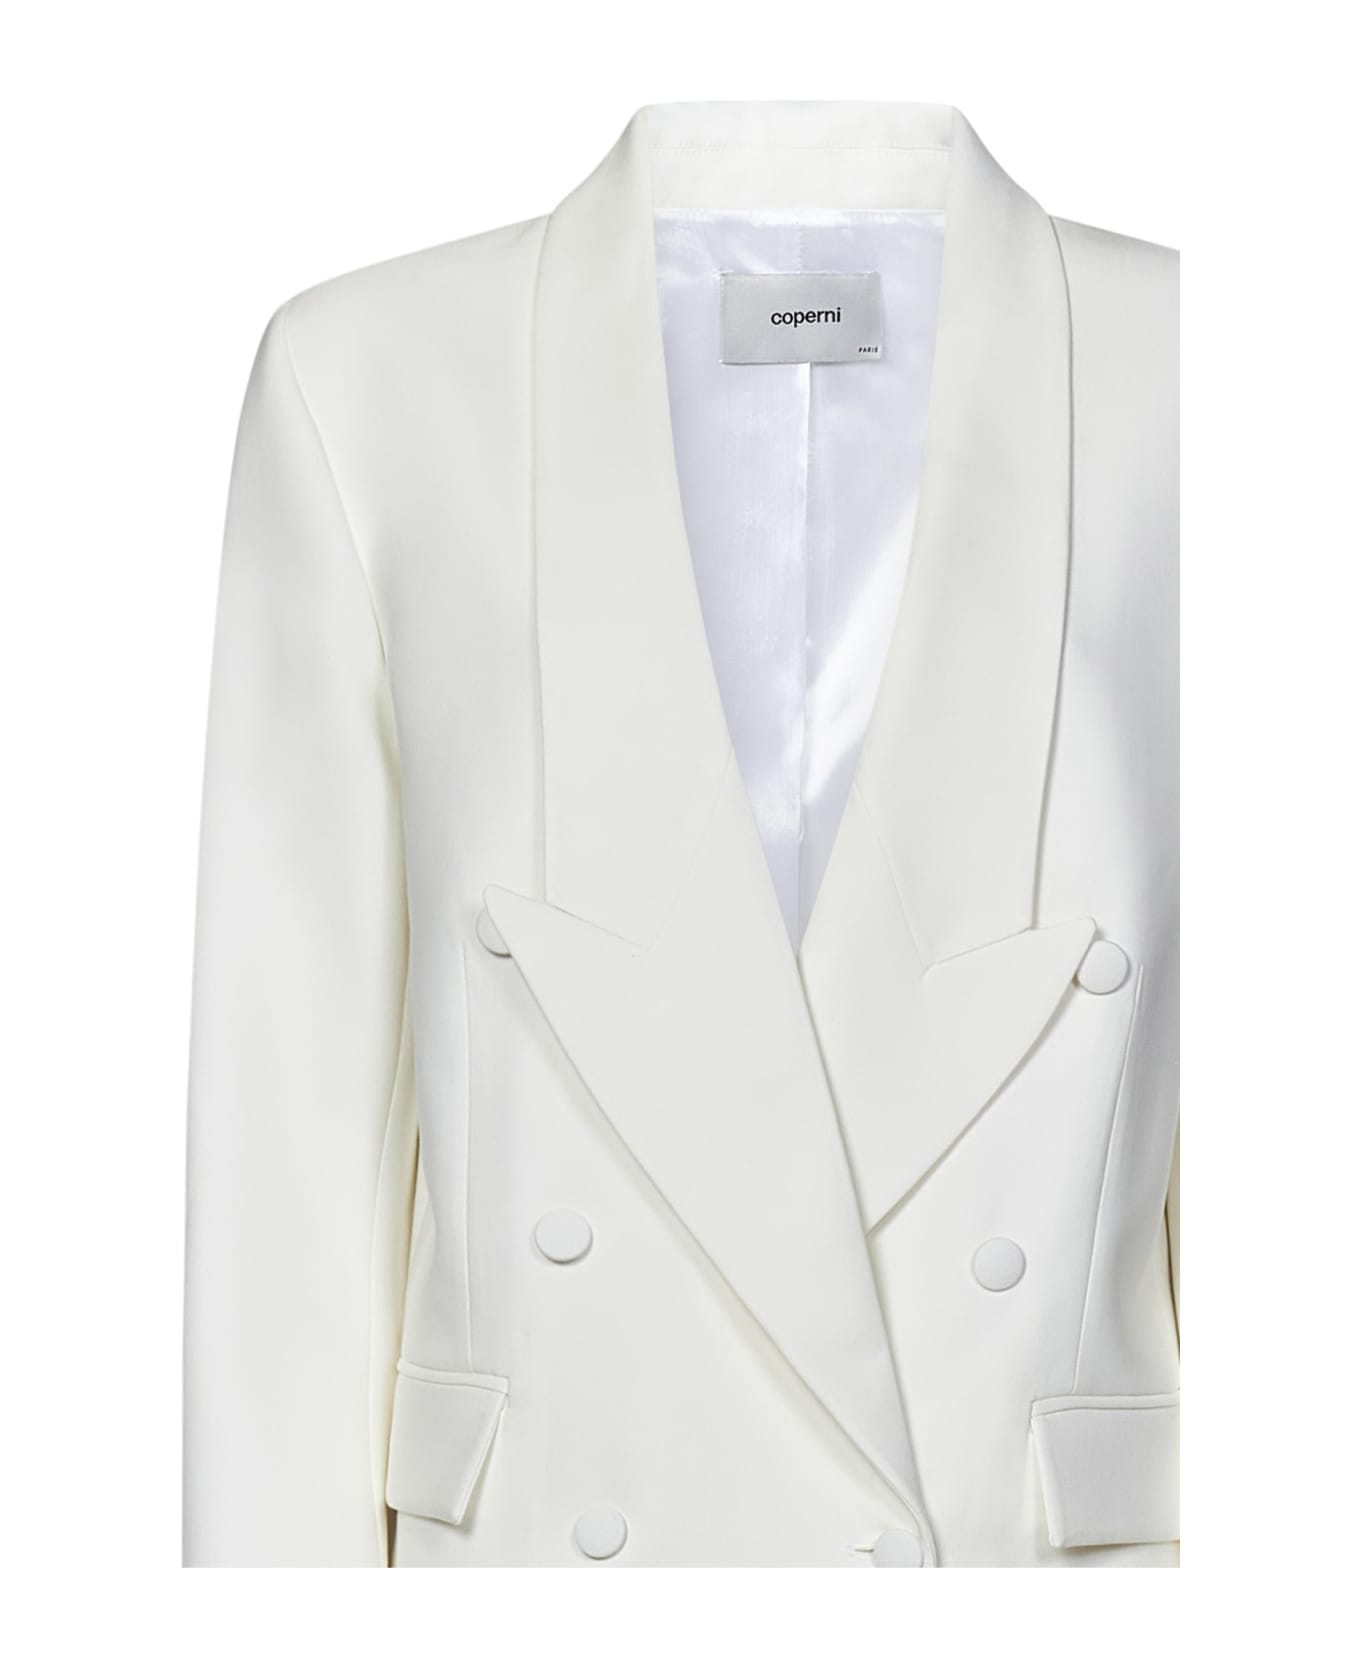 Coperni Double Breasted Tailored Jacket - WHITE ジャケット